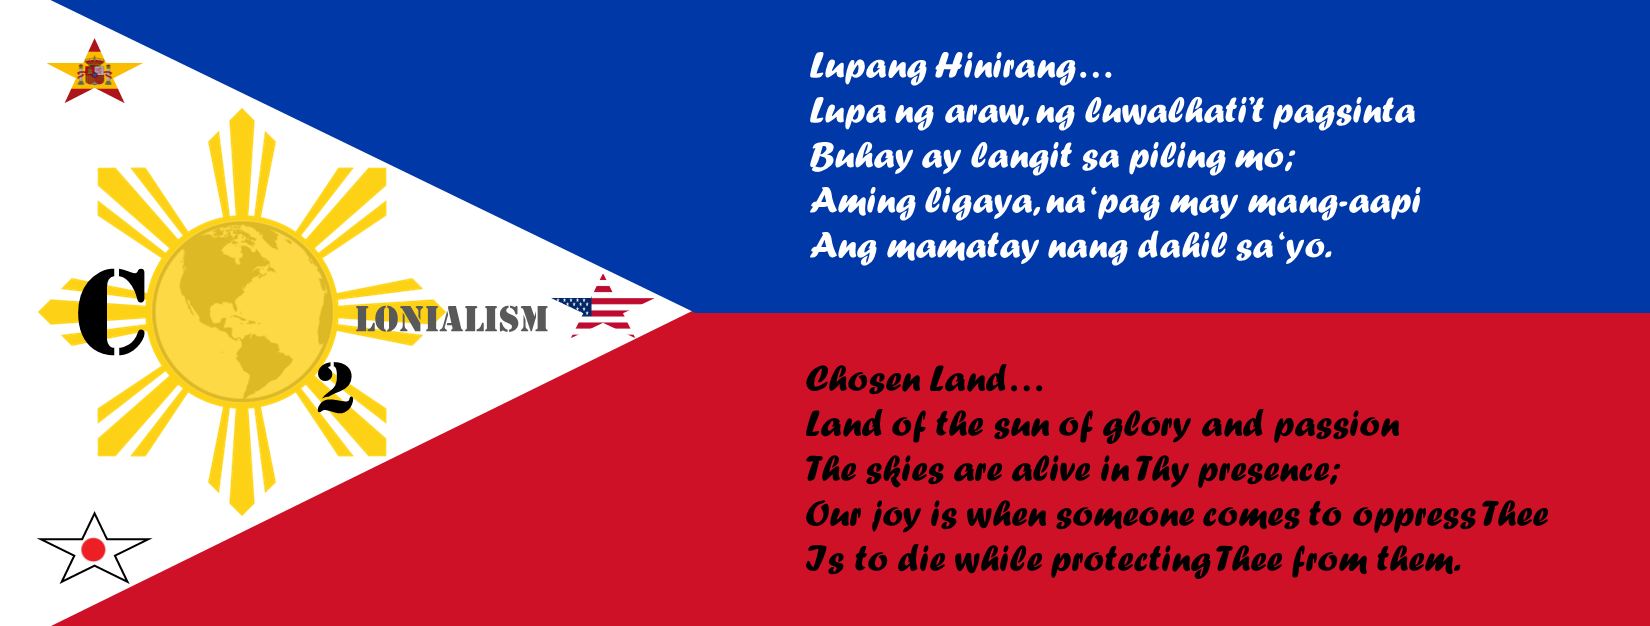 Filipino flag with lyrics from Lupang Hinirang.